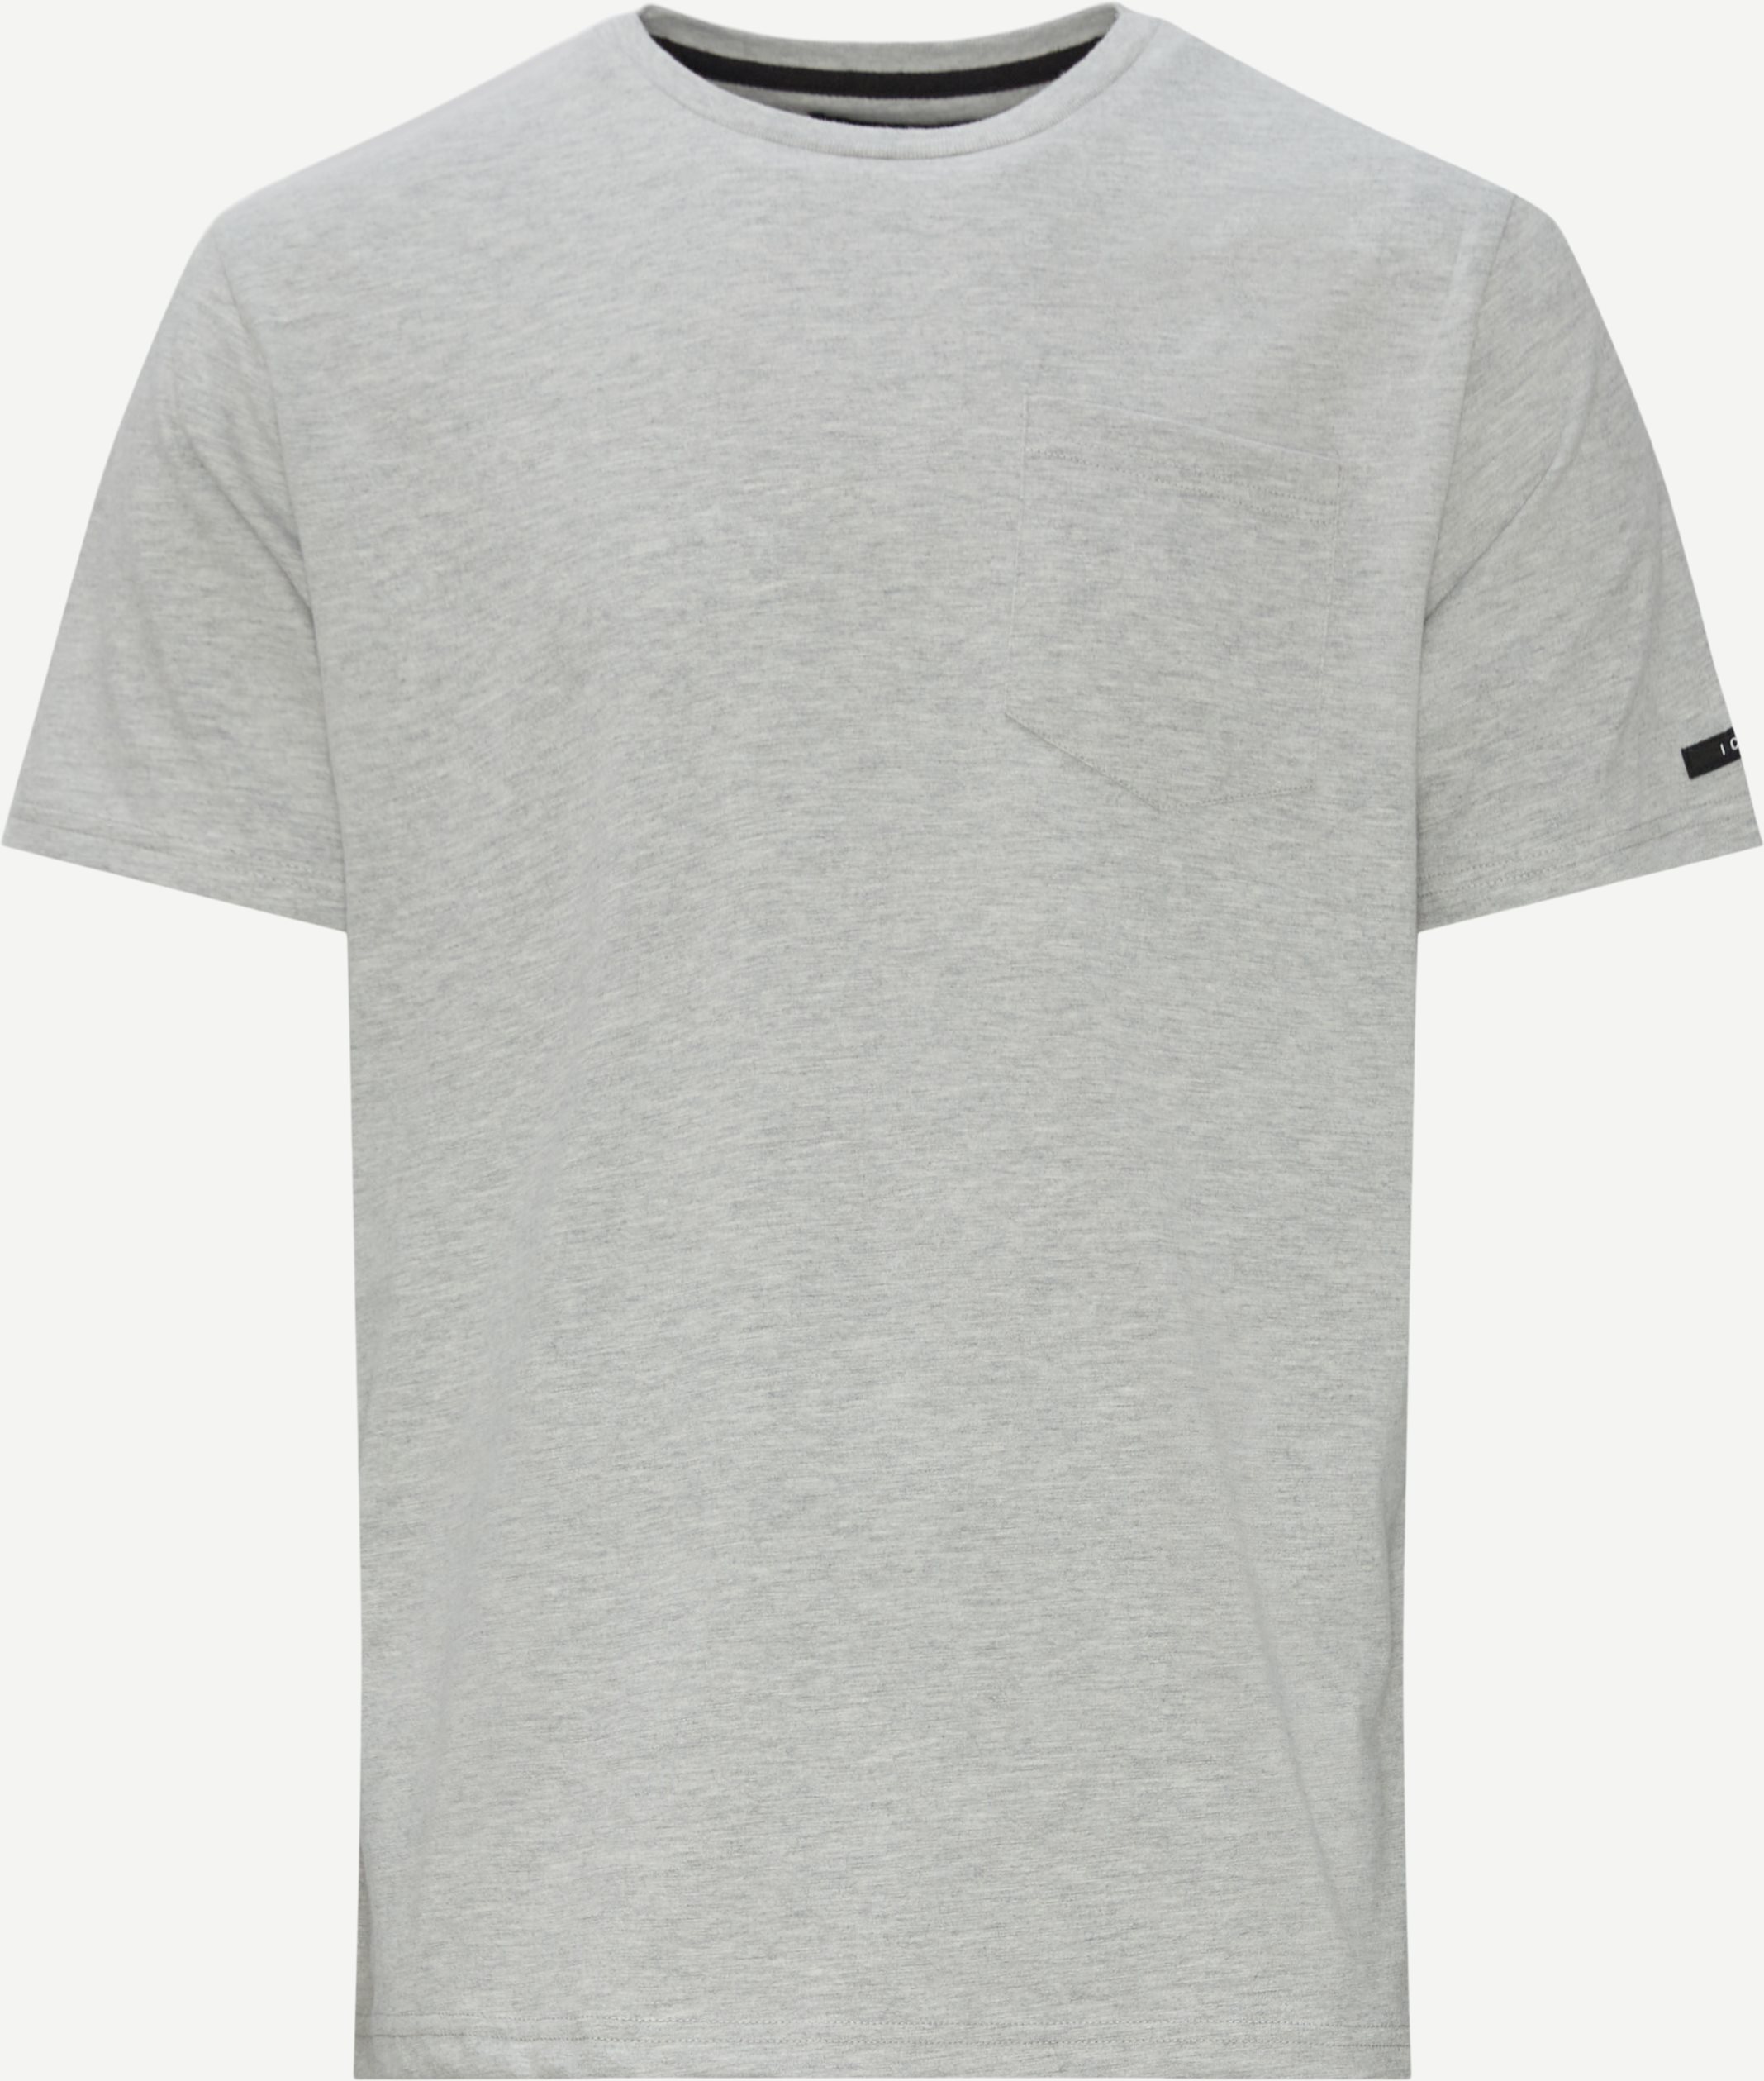 Zeus T-shirt - T-shirts - Regular fit - Grå